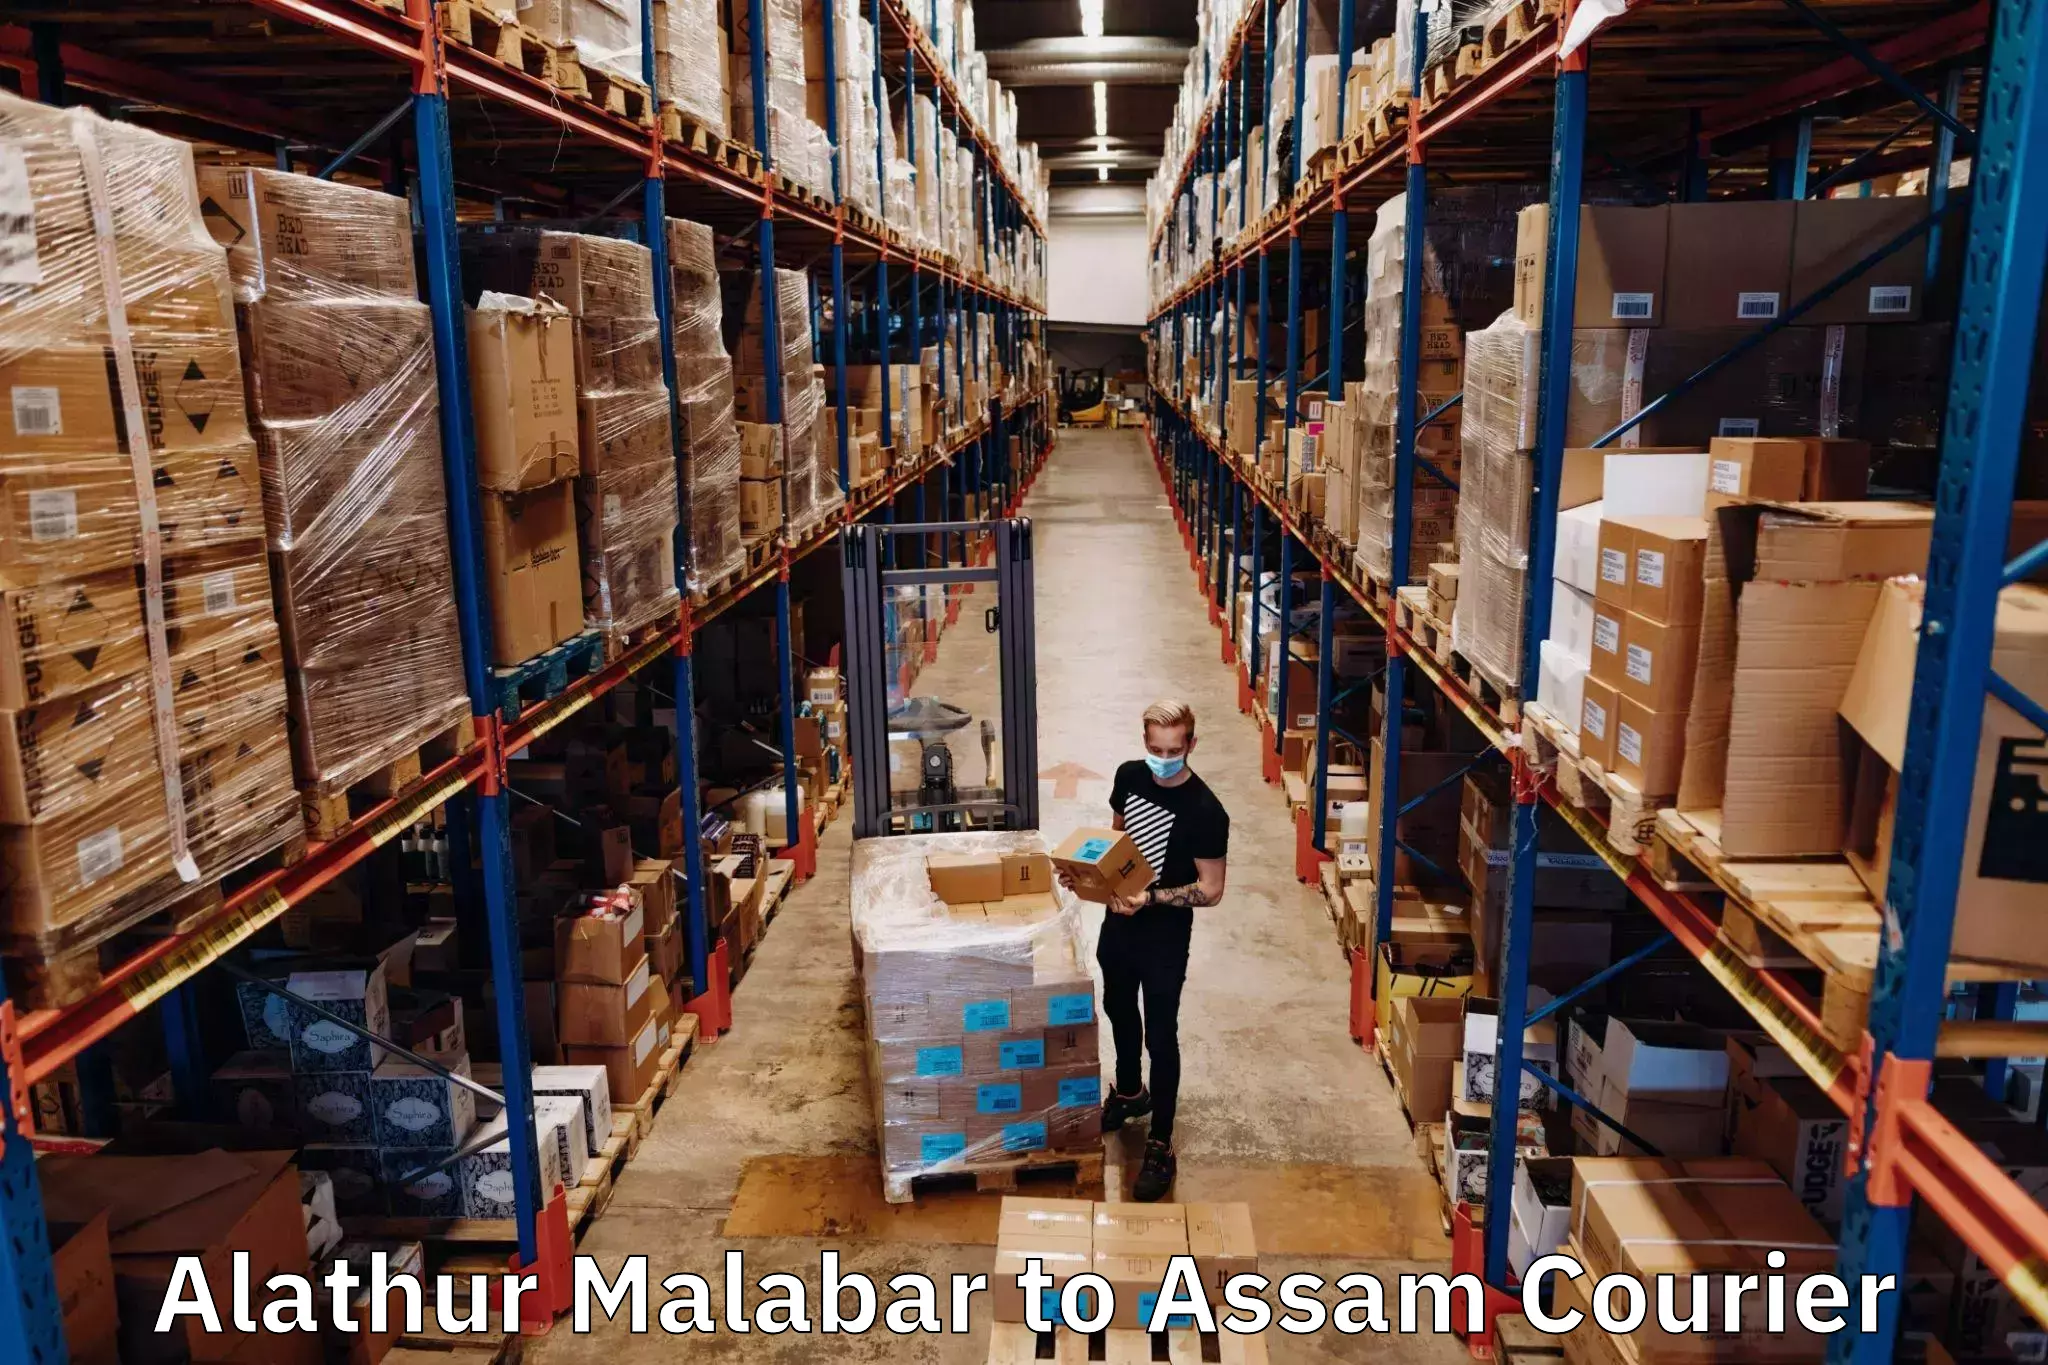 High-speed logistics services Alathur Malabar to Lala Assam